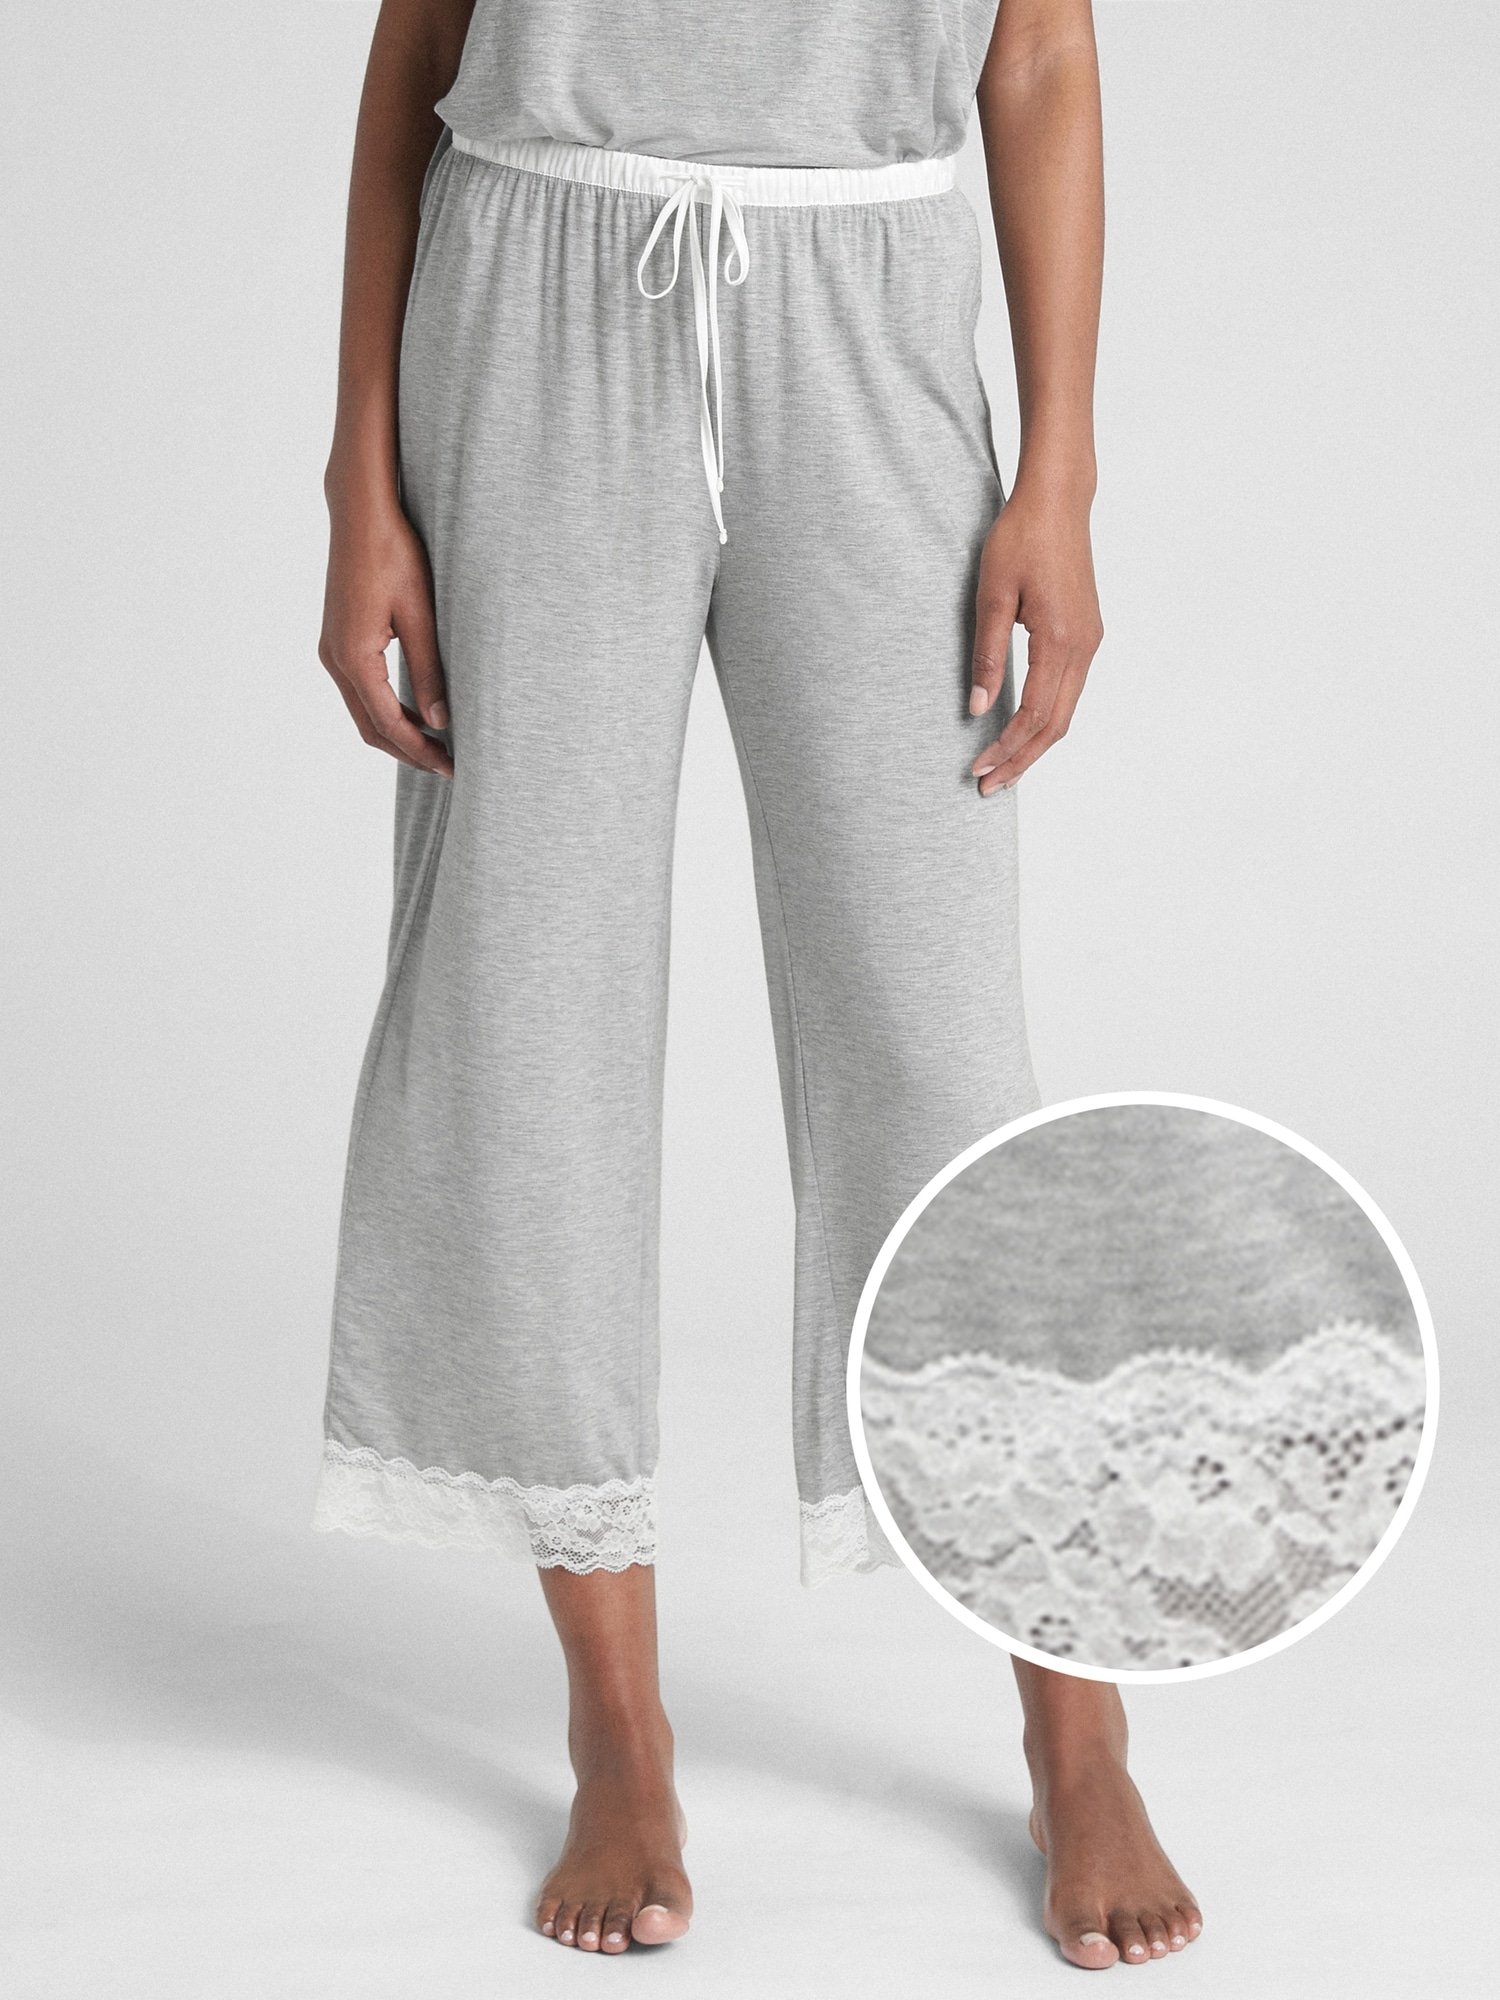 Dreamwell Modal Karışımlı Pijama Altı product image